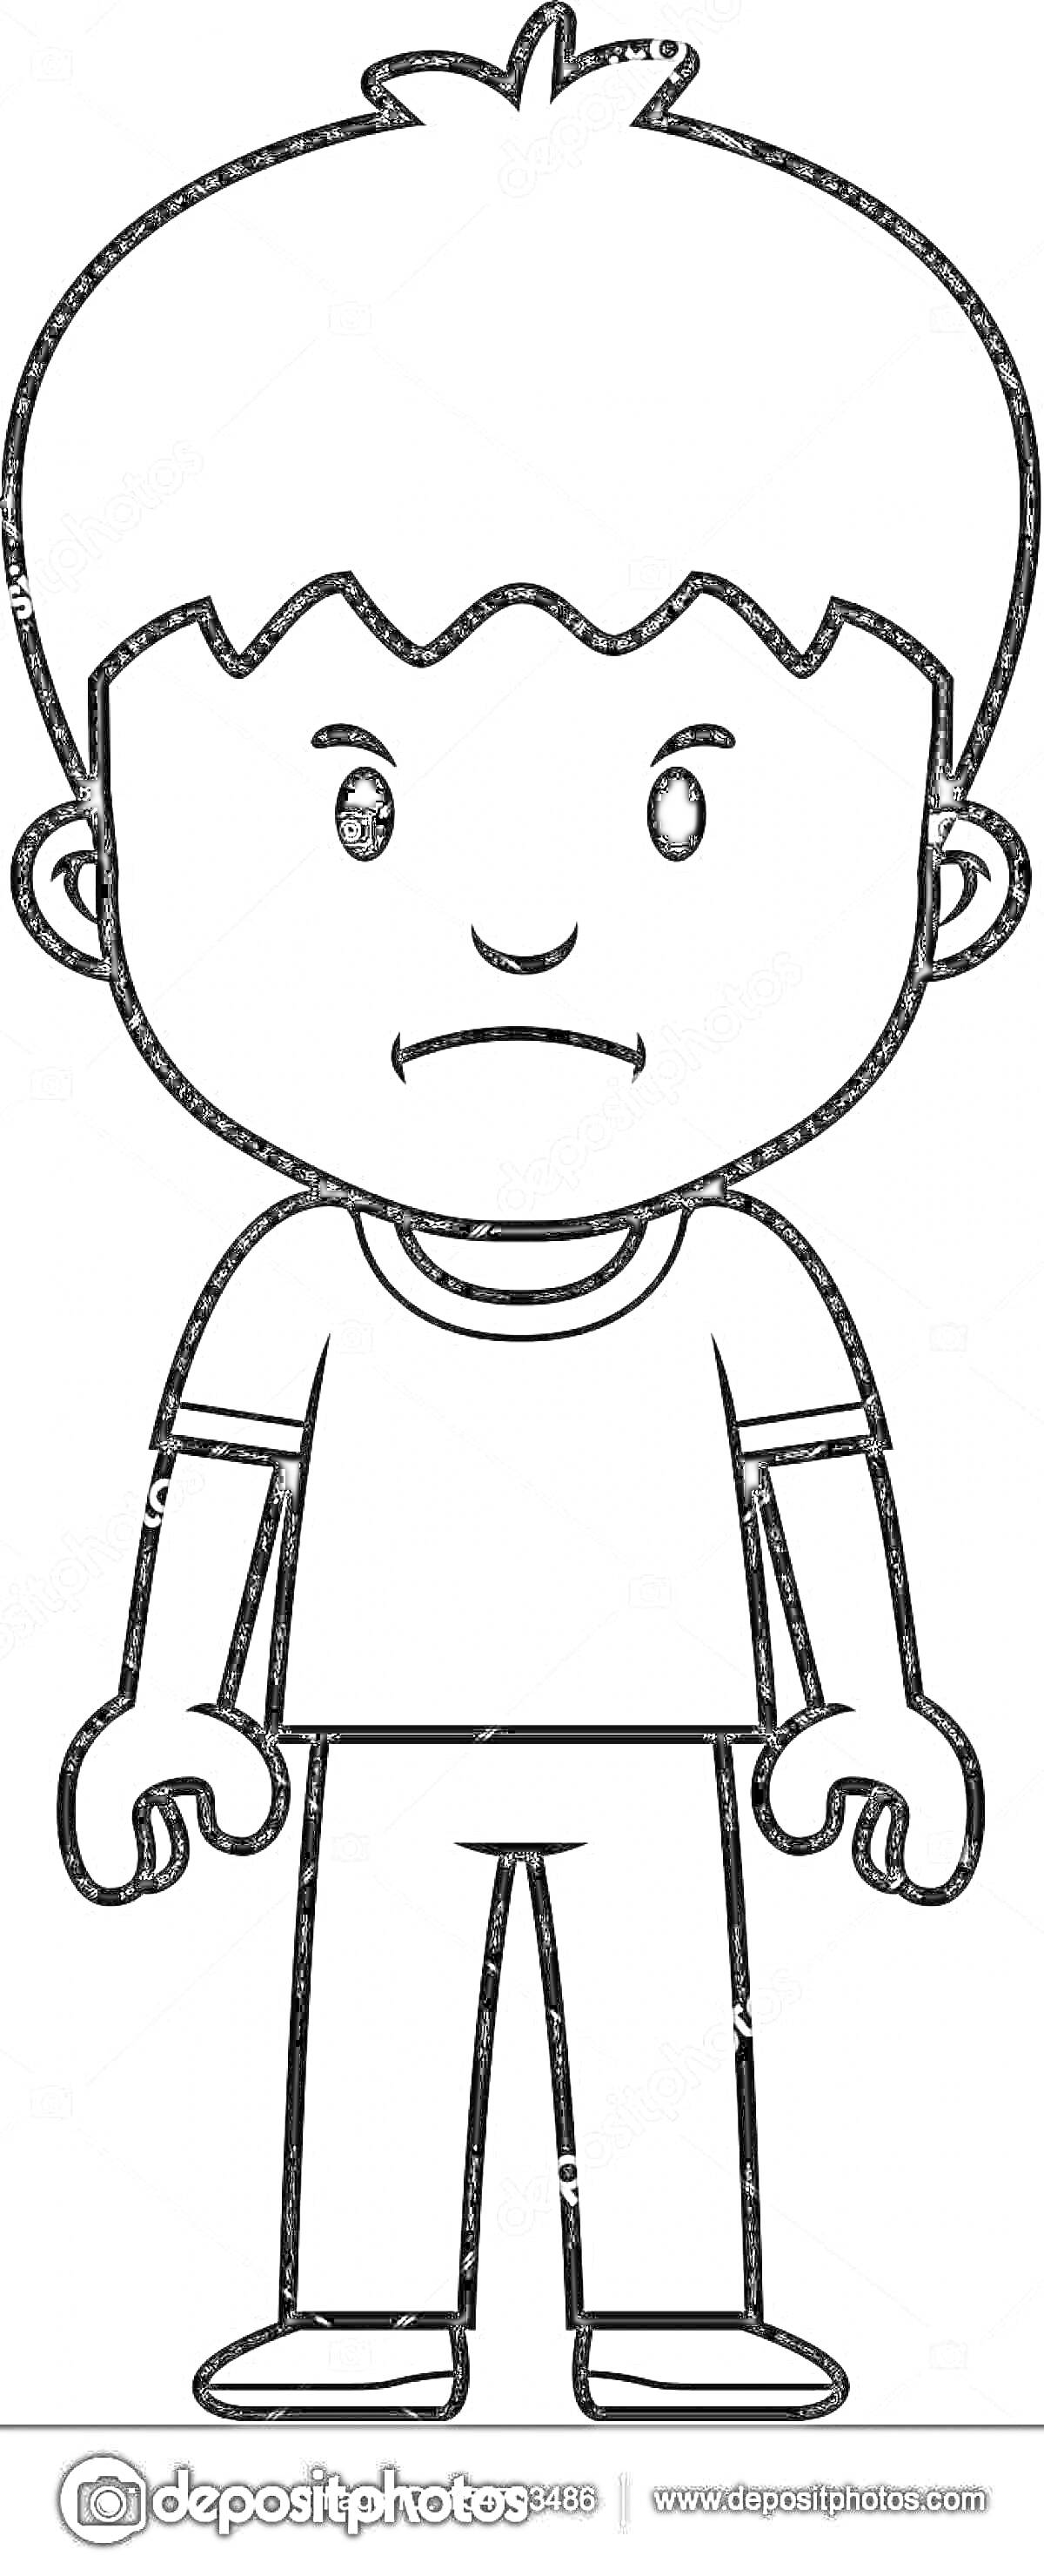 Раскраска Грустный мальчик с короткими волосами, одетый в футболку и брюки